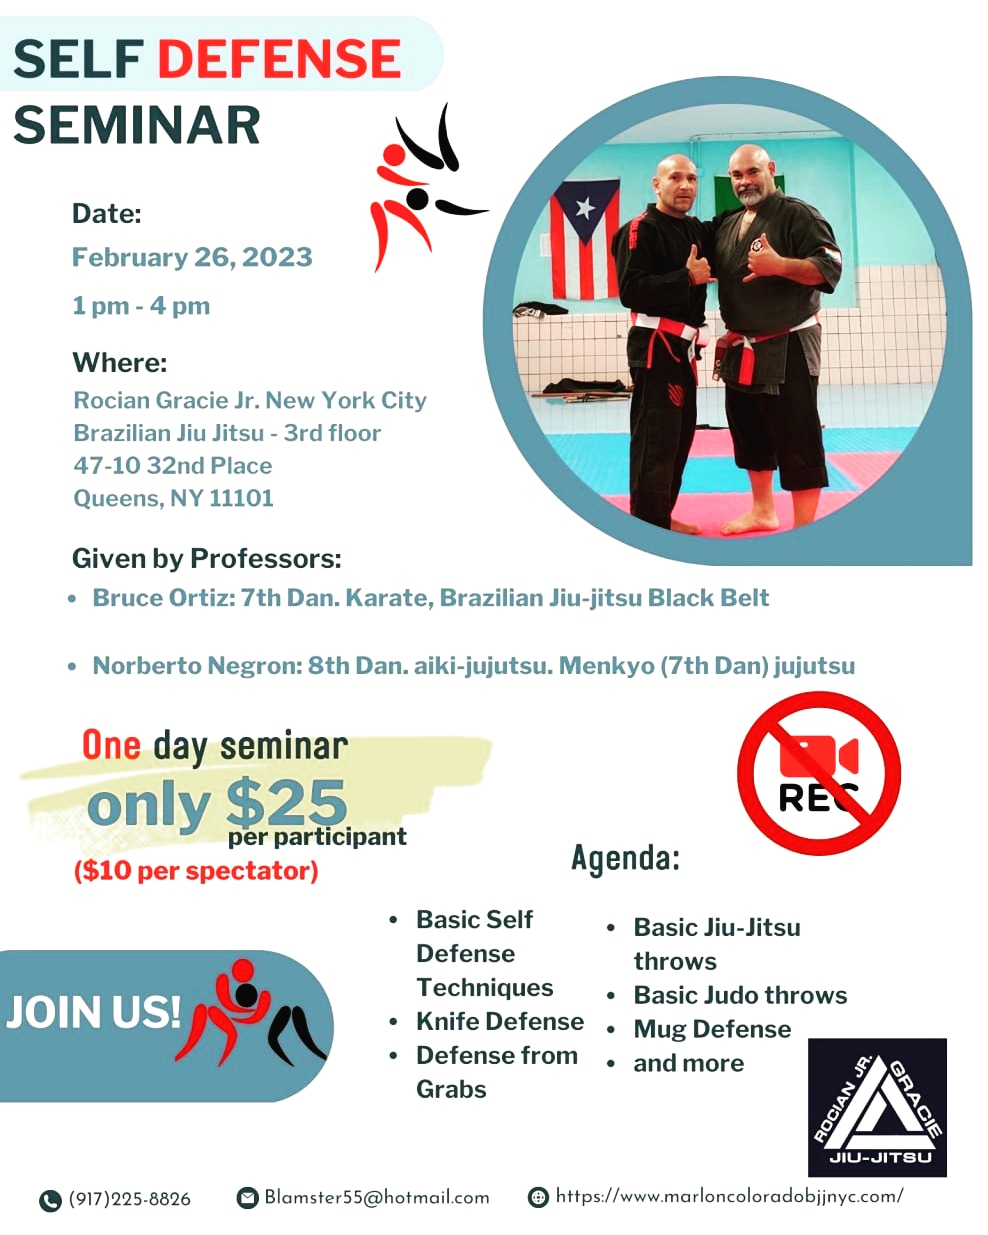 NYC Self-Defense Seminar, Knife, Mug Defense, Judo, Jiu-Jitsu Fundamentals, and more!